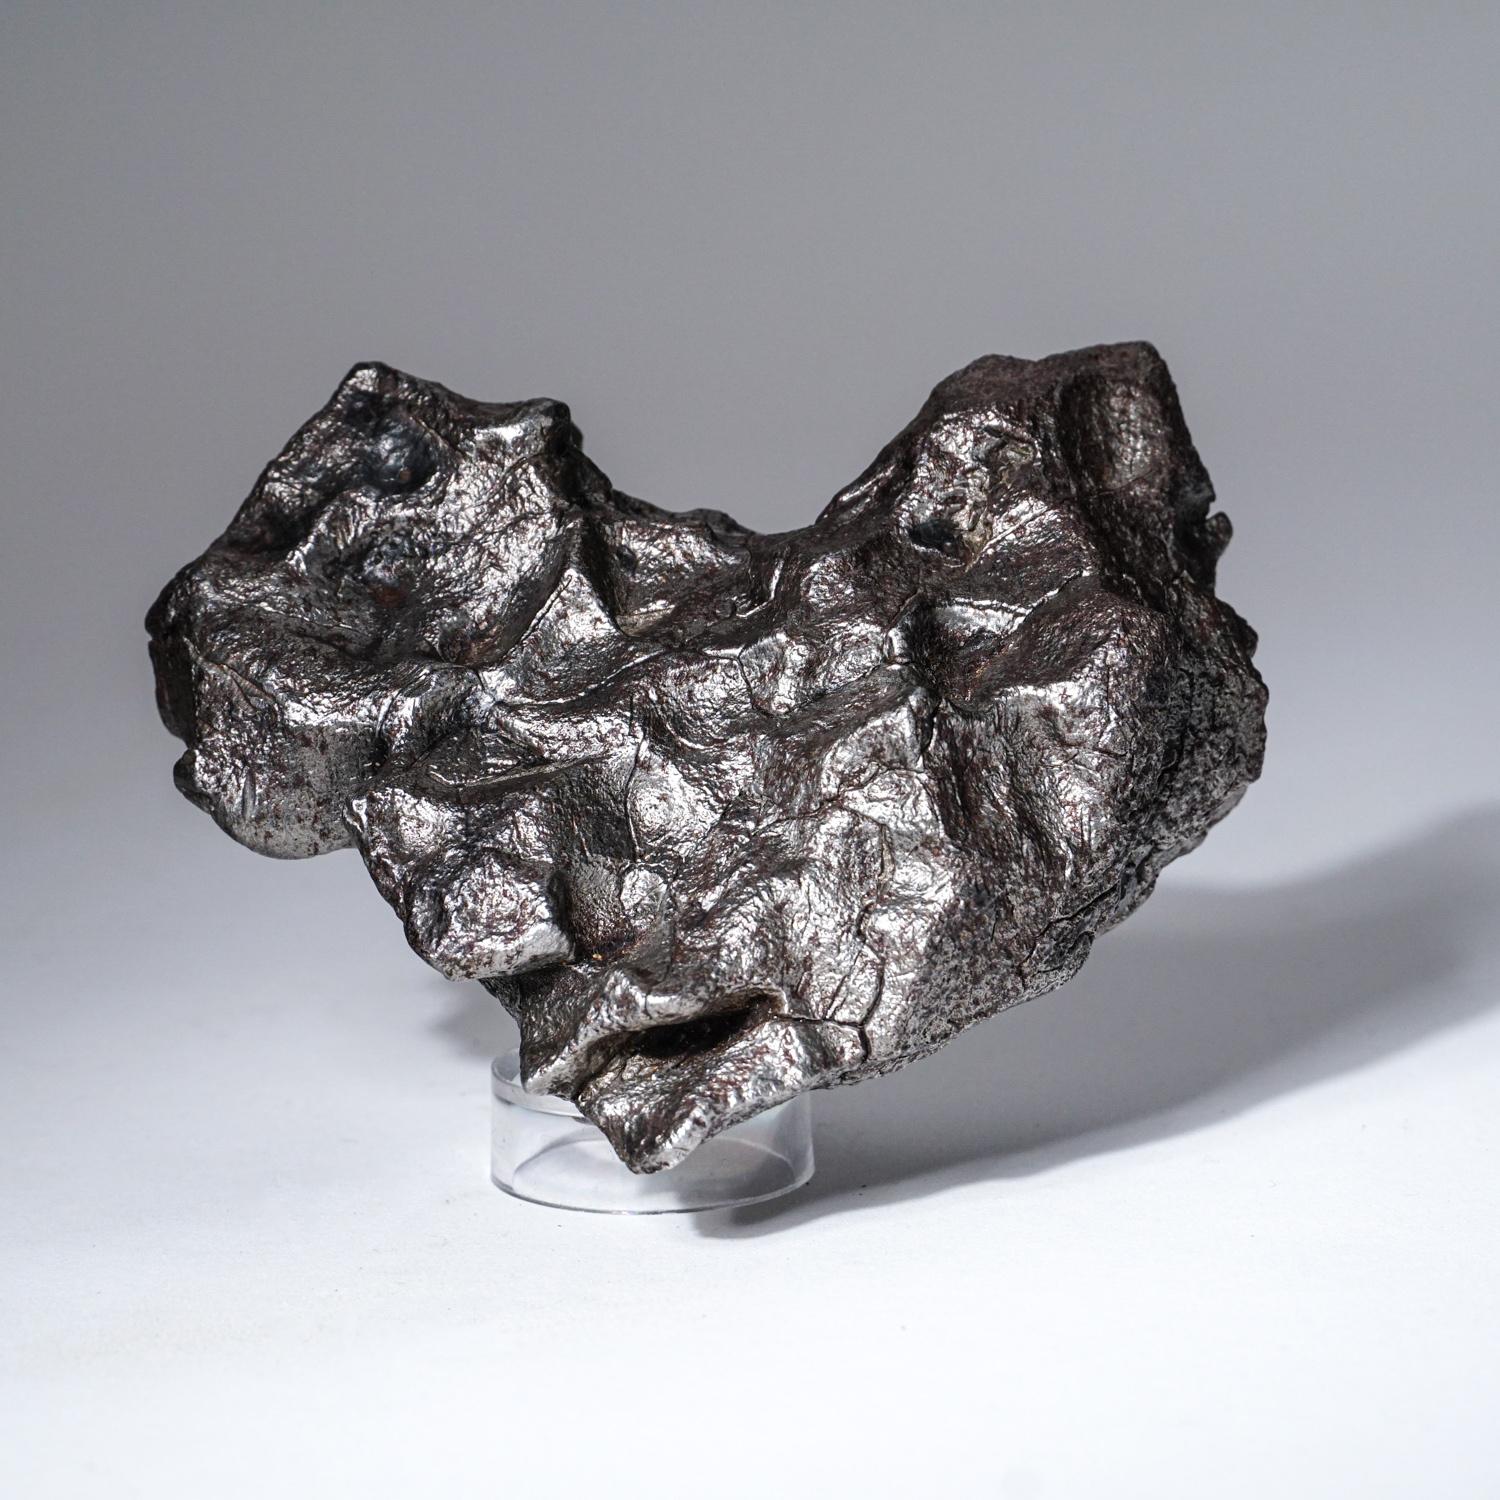 Une météorite de fer est tombée sur les monts Sikhote-Alin, dans le sud-est de la Russie, en 1947. Bien que de grandes chutes de météorites en fer aient été observées auparavant et que des fragments aient été récupérés, jamais auparavant, dans